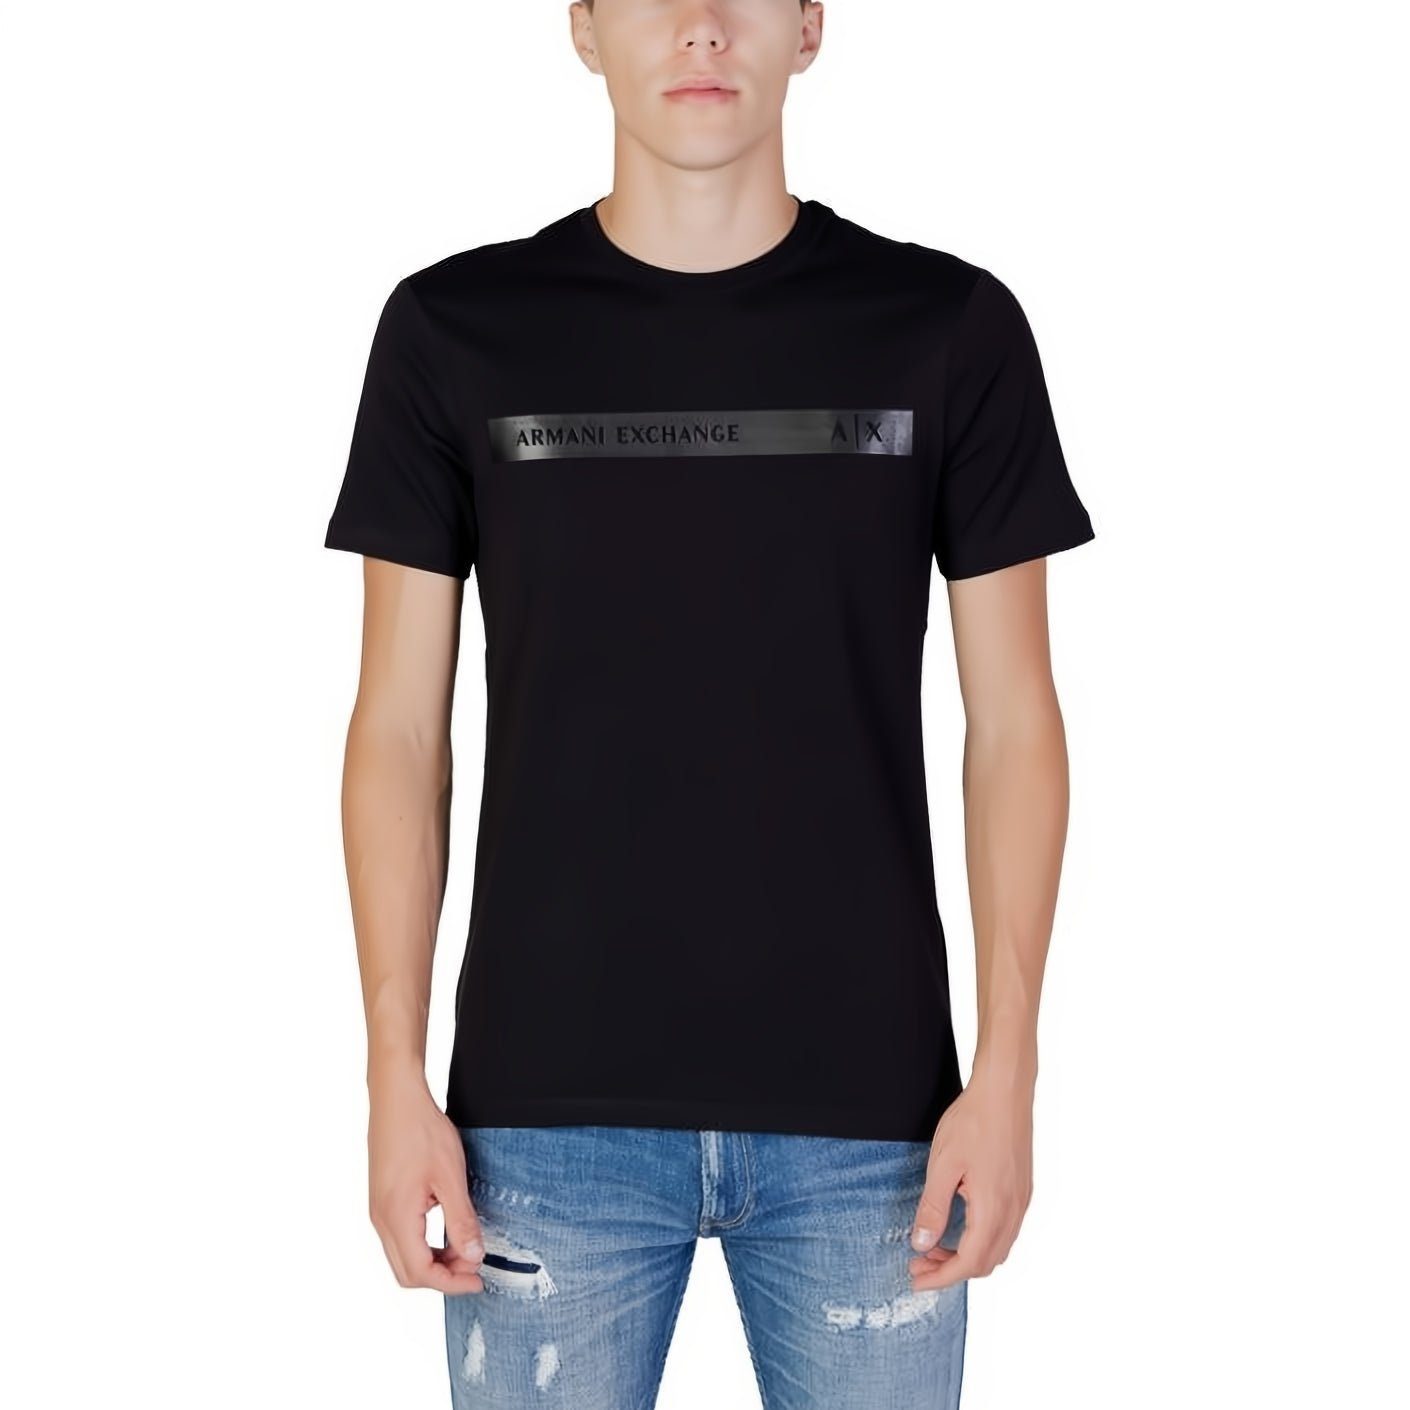 ARMANI EXCHANGE T-Shirt für Ihre Kleidungskollektion! kurzarm, Must-Have ein Rundhals